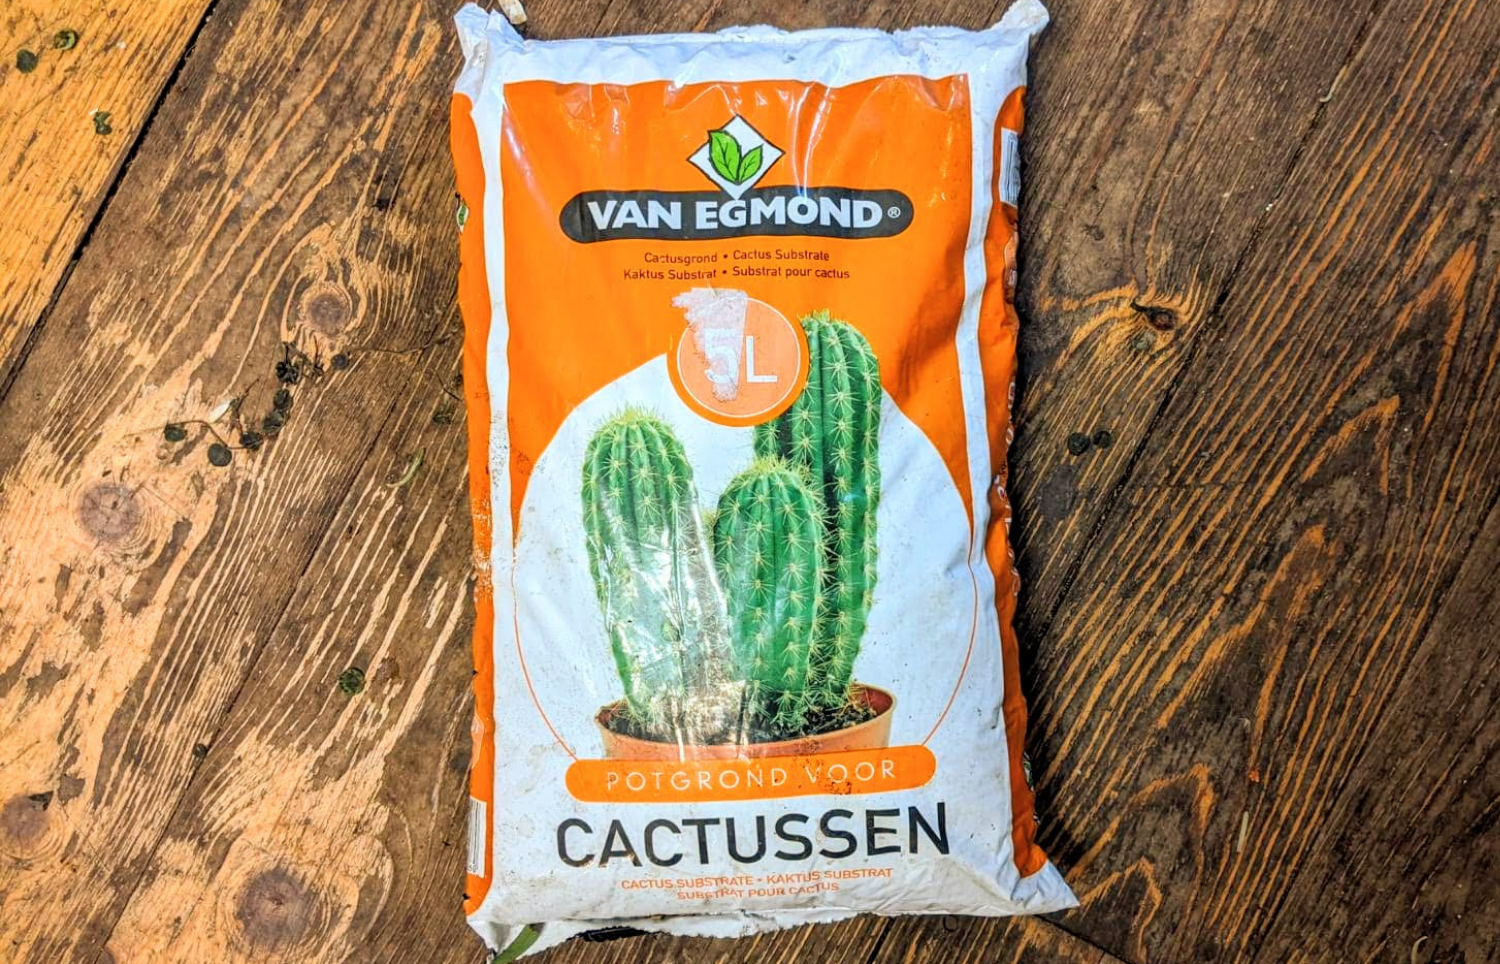 Van Egmond Cactus Substrate